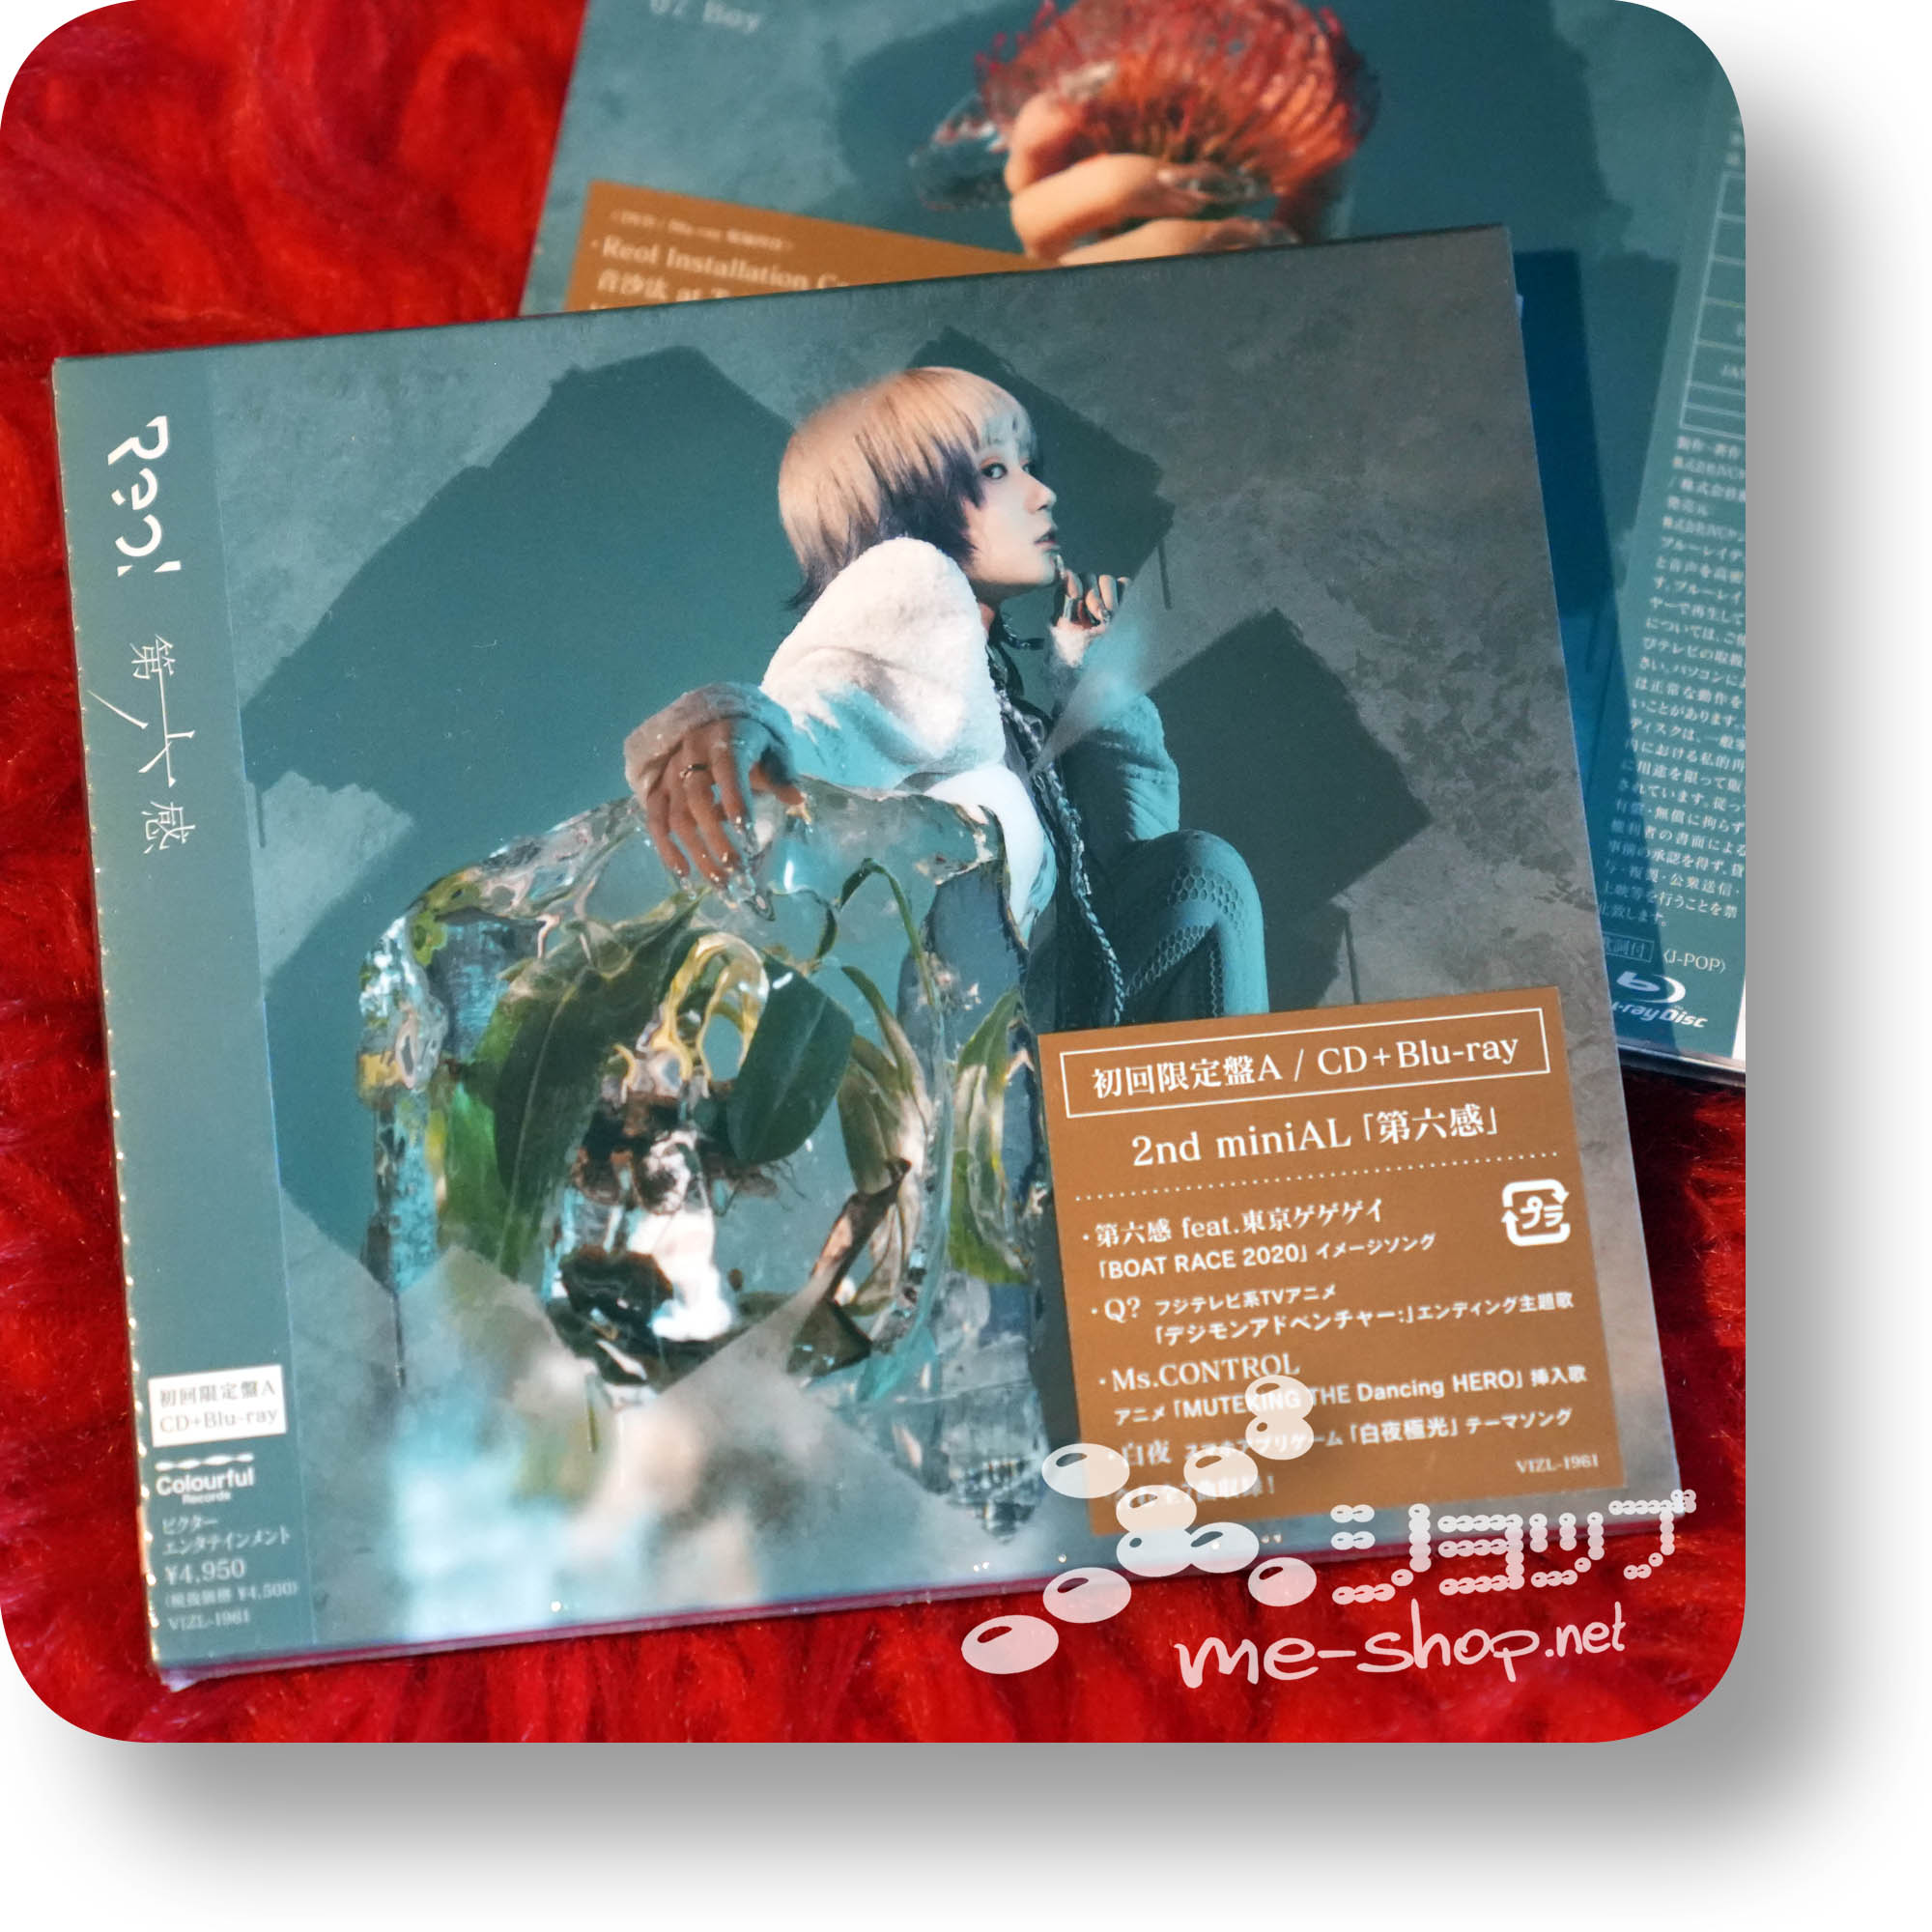 uudgrundelig pakke År REOL - Dai 6 Kan (lim.CD+Live-Blu-ray) | me-shop